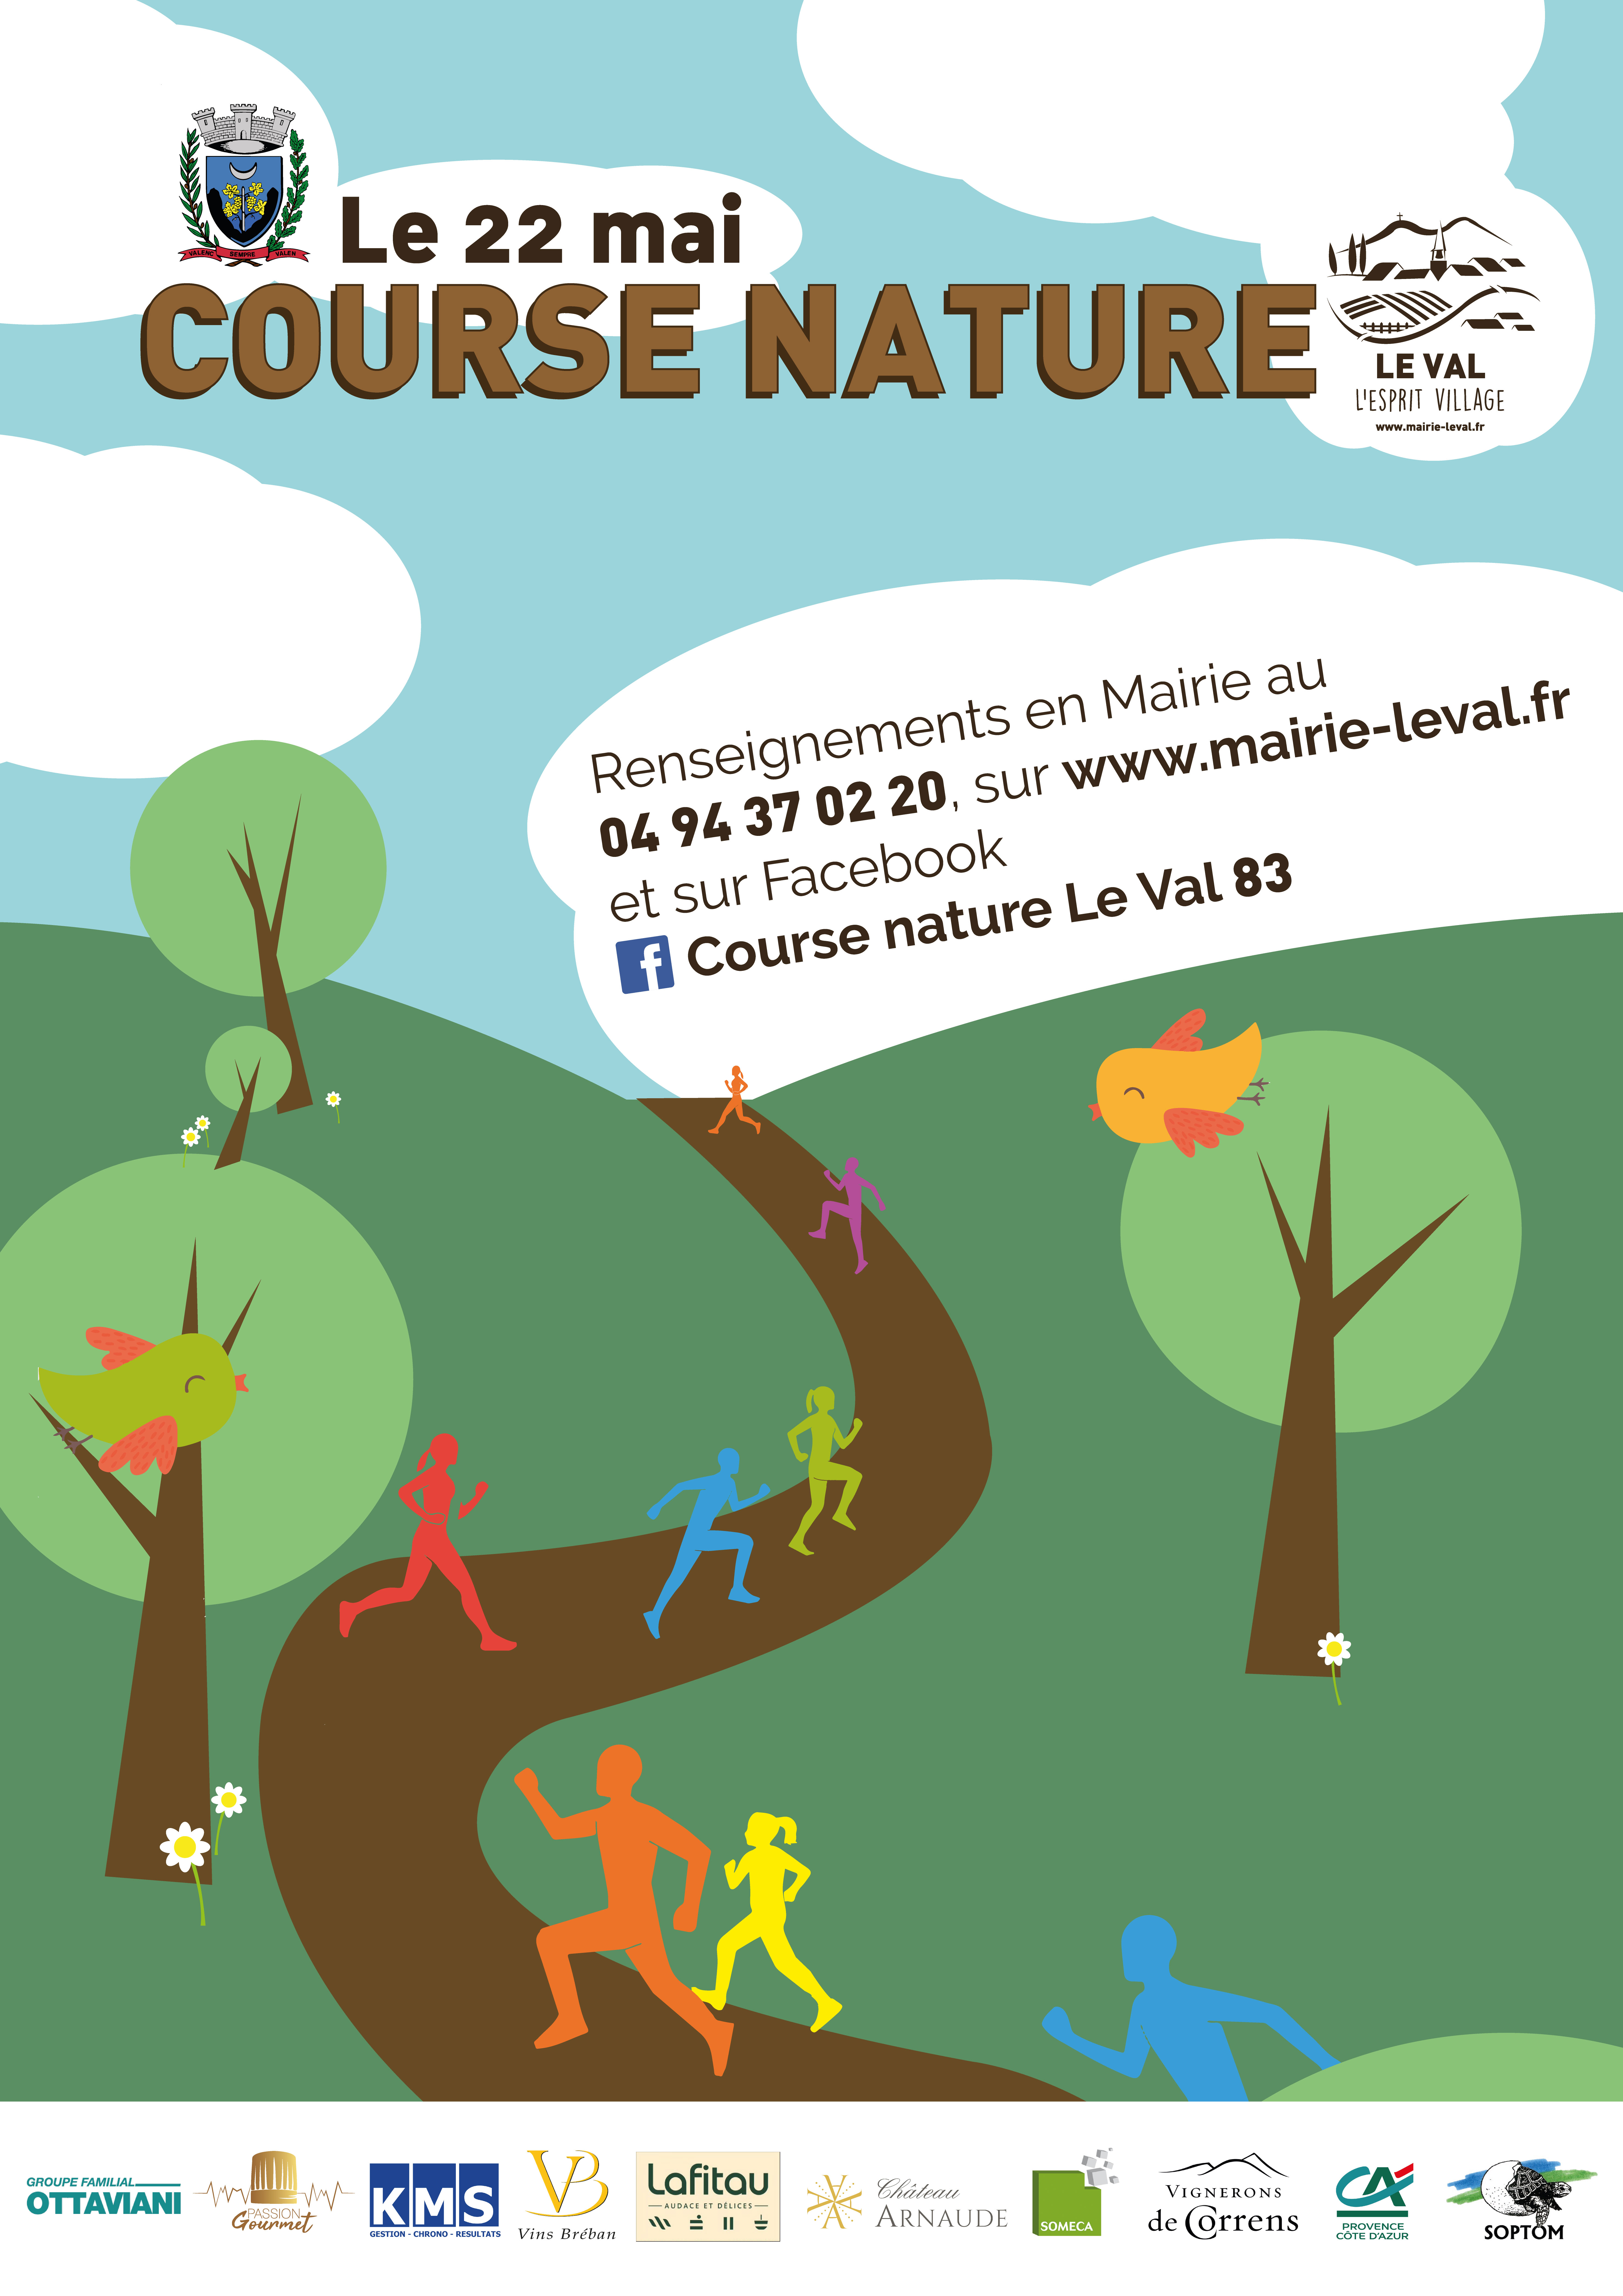 Course NATURE LE VAL